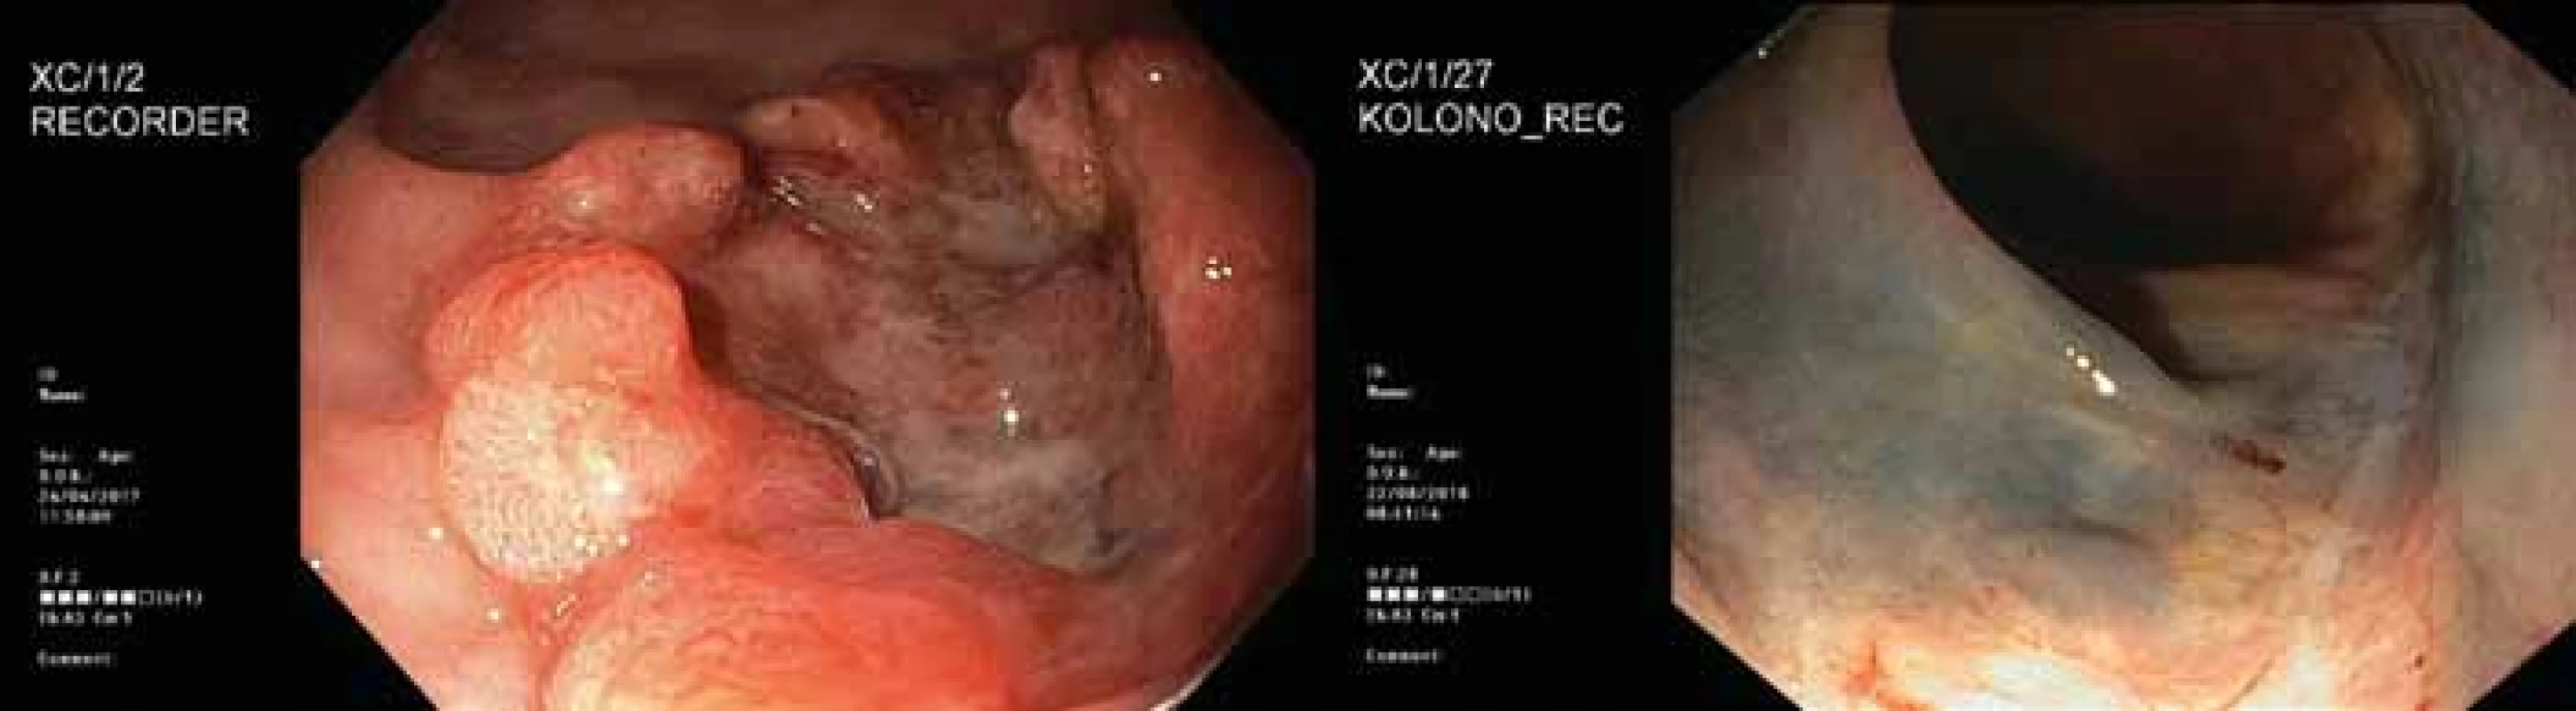 2. Endoskopický obraz nádoru před léčbou (vlevo) a půl roku po operaci (vpravo).